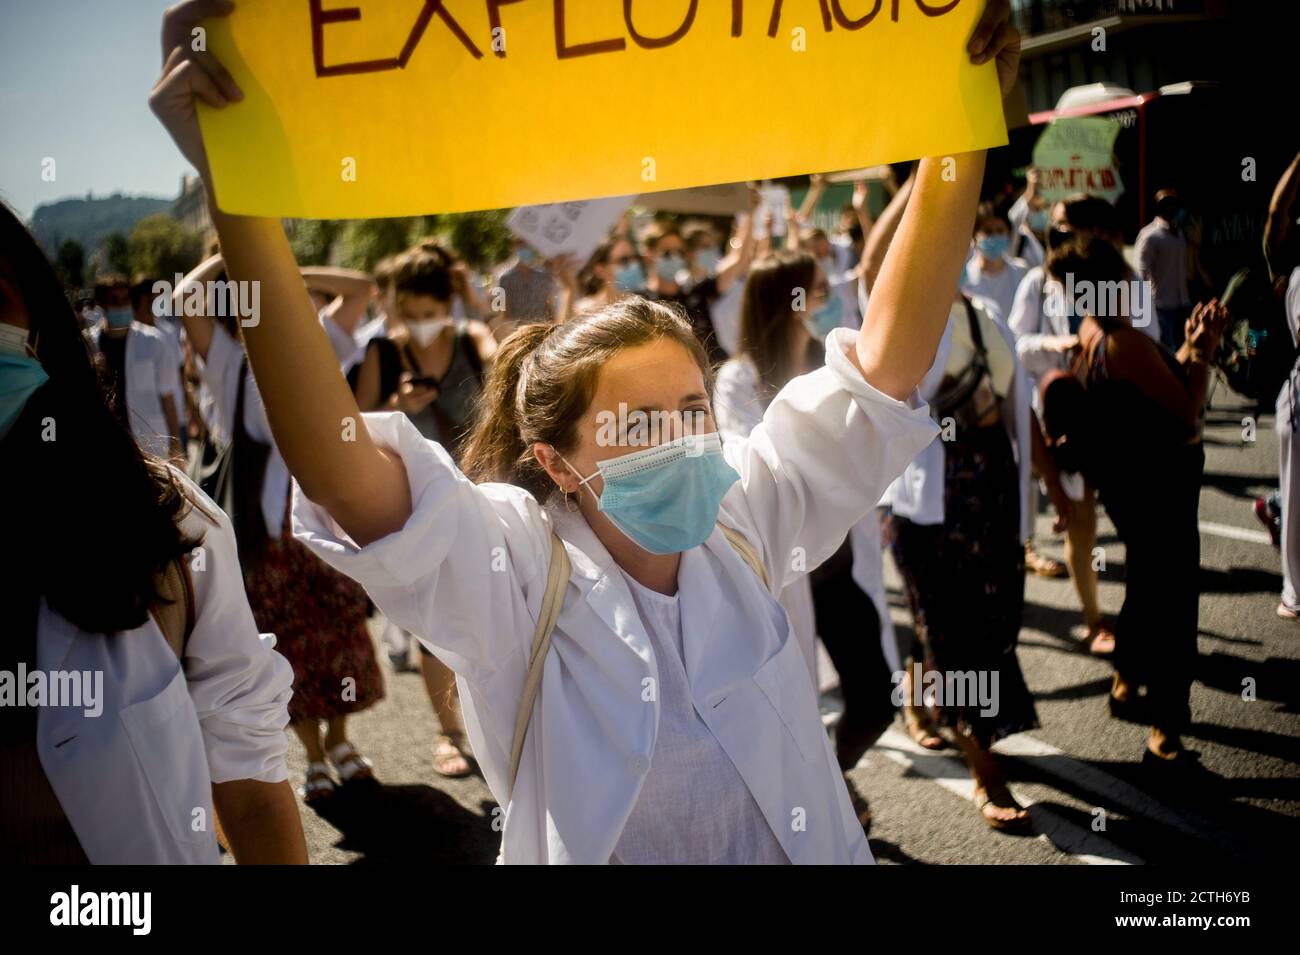 Barcellona, Spagna. 23 settembre 2020, Barcellona, Catalogna, Spagna: A Barcellona la donna che indossa una maschera facciale ha un banner durante una marcia di medici residenti (MIR) chiedendo miglioramenti sulle condizioni di lavoro e l'aumento dei salari. Credit: Jordi Boixareu/Alamy Live News Foto Stock